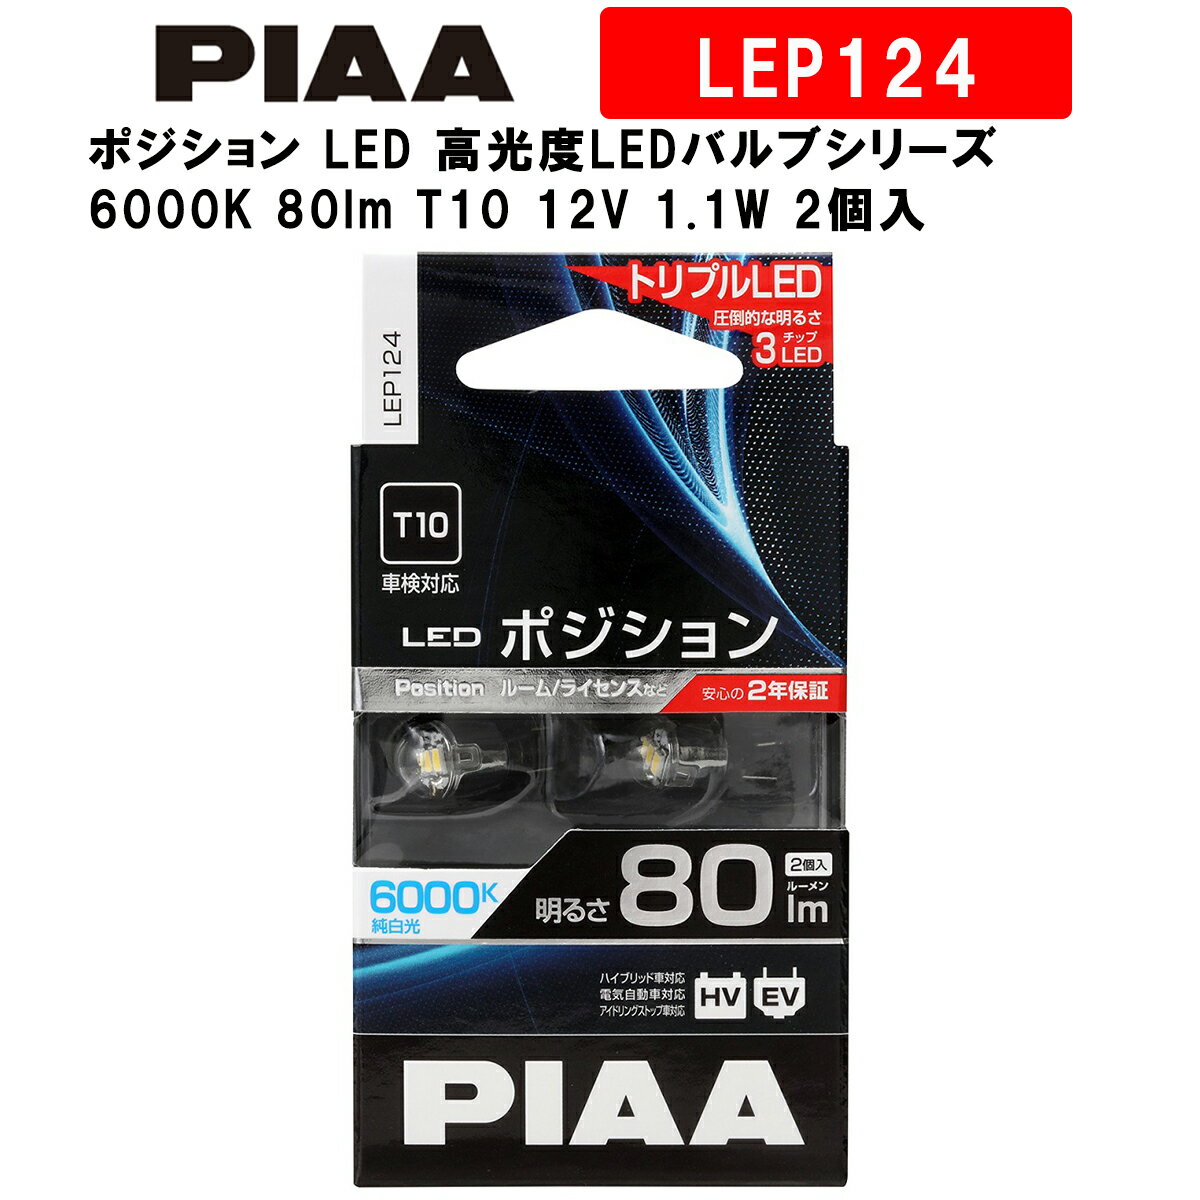 PIAA ピア ポジション LED 高光度LEDバルブシリーズ 6000K 80lm T10 12V 1.1W 2個入 LEP124